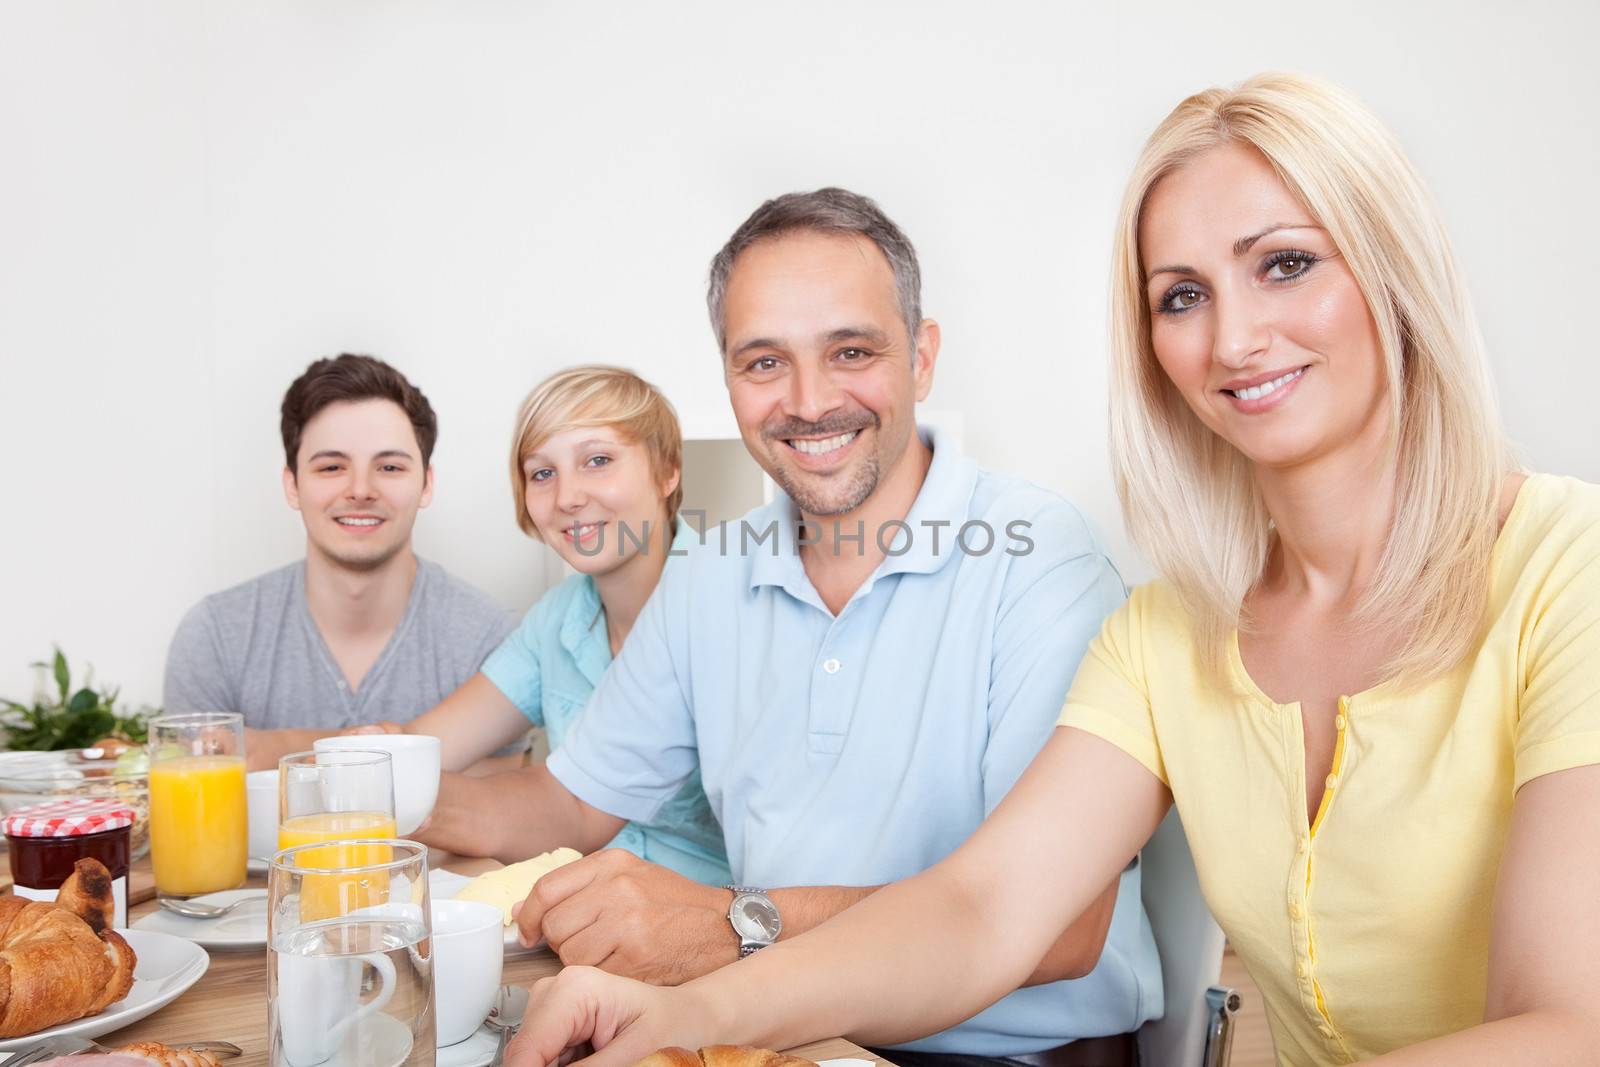 Happy family enjoying breakfast by AndreyPopov